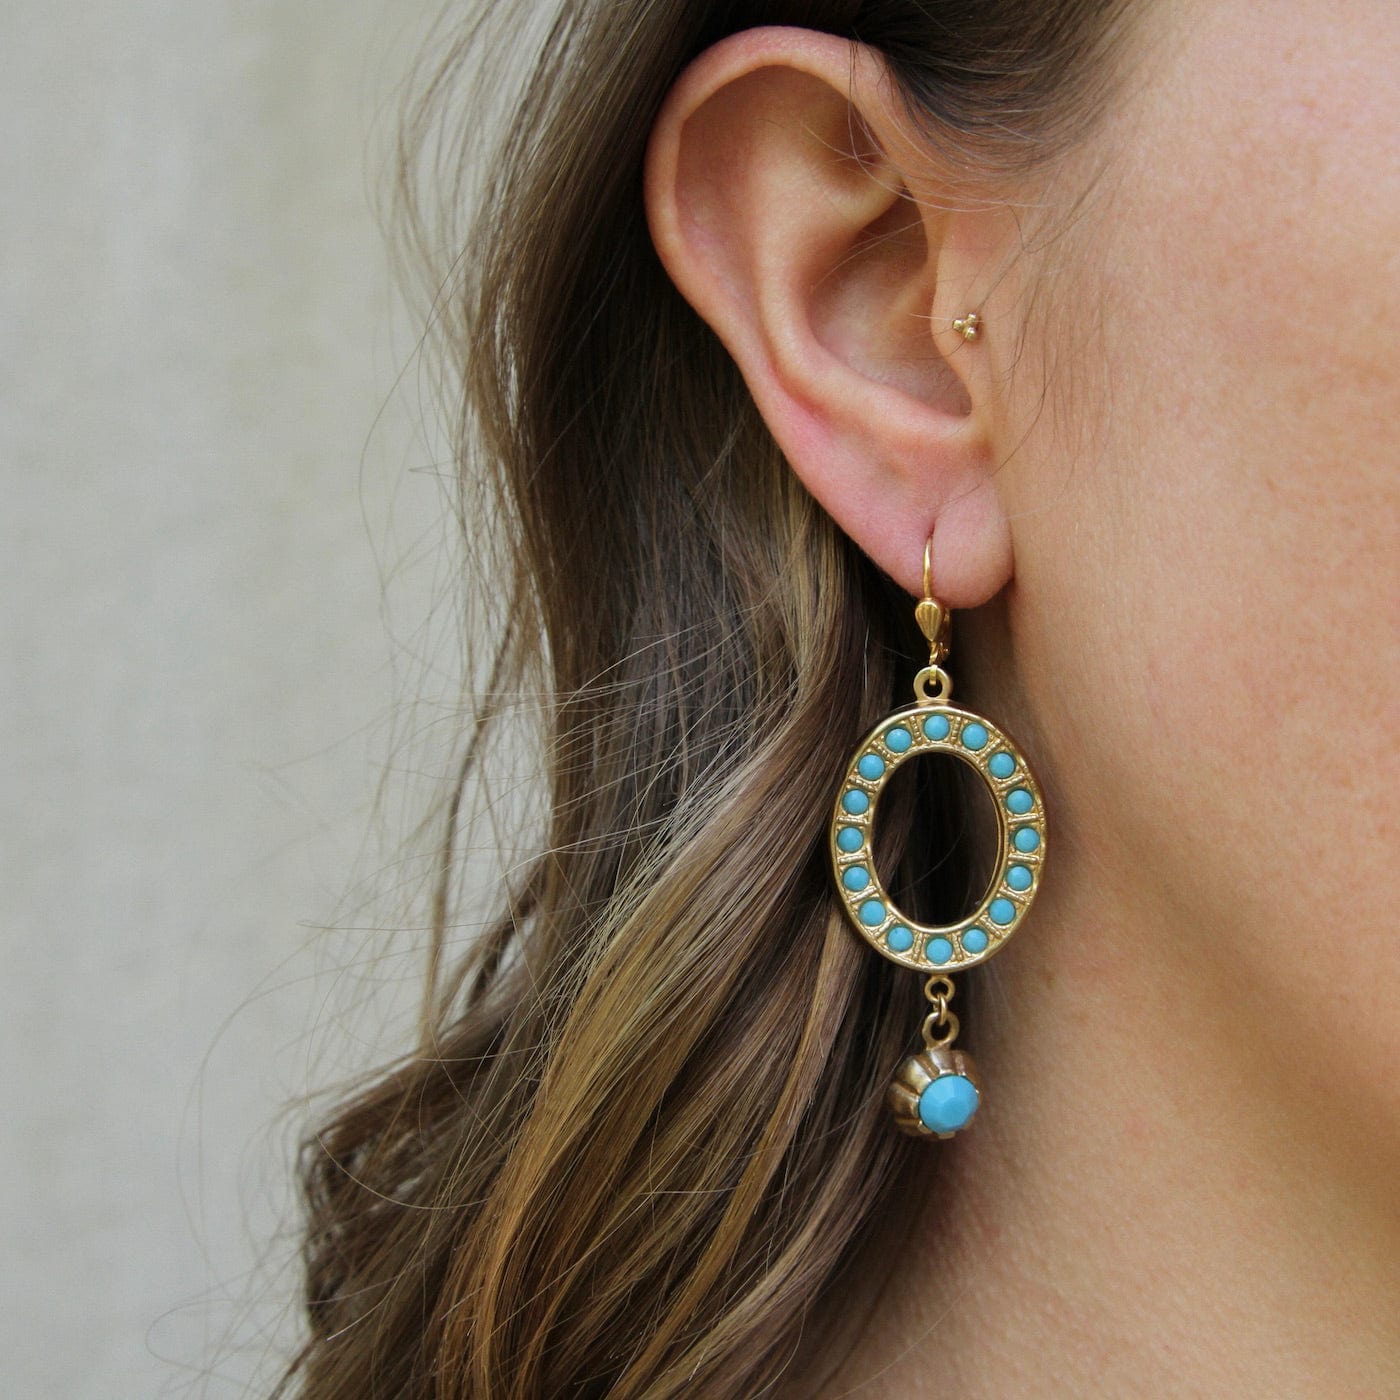 EAR-JM Turquoise Crystal Oval Earring